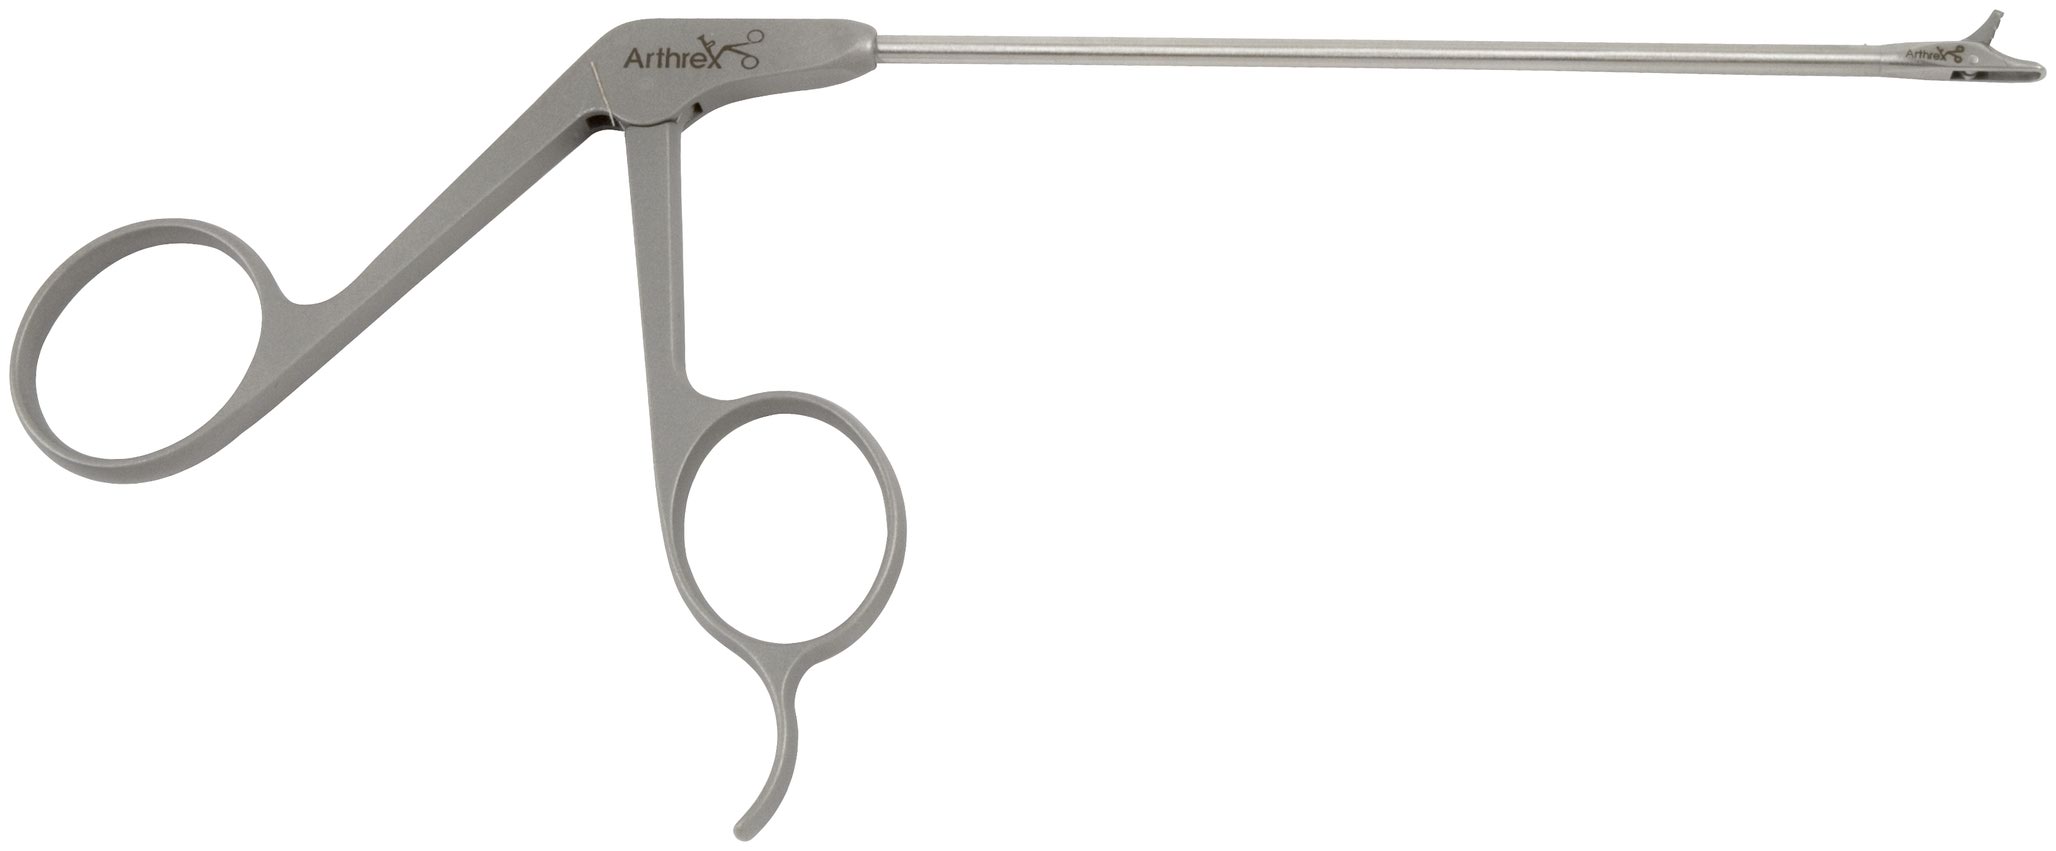 Arthrex - BioComposite SwiveLock C, 4.75 mm x 19.1 mm, Qty. 5 - AR 